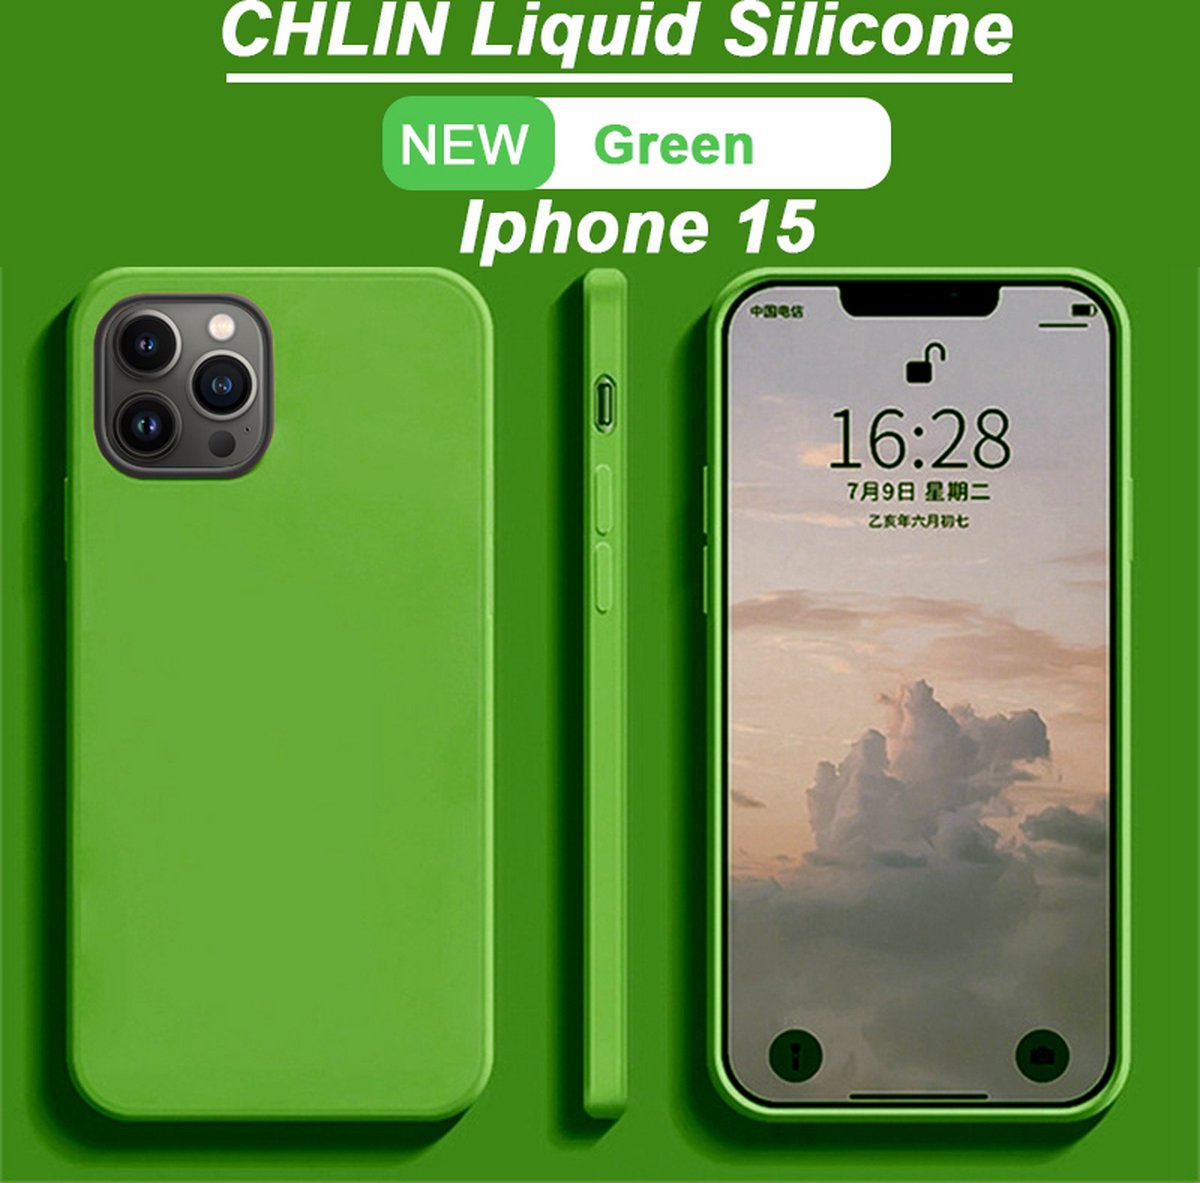 CL CHLIN® Premium Siliconen Case Iphone 15 groen - Iphone 15 hoesje - Iphone 15 case - Iphone 15 hoes - Silicone hoesje - Iphone 15 protection - Iphone 15 protector